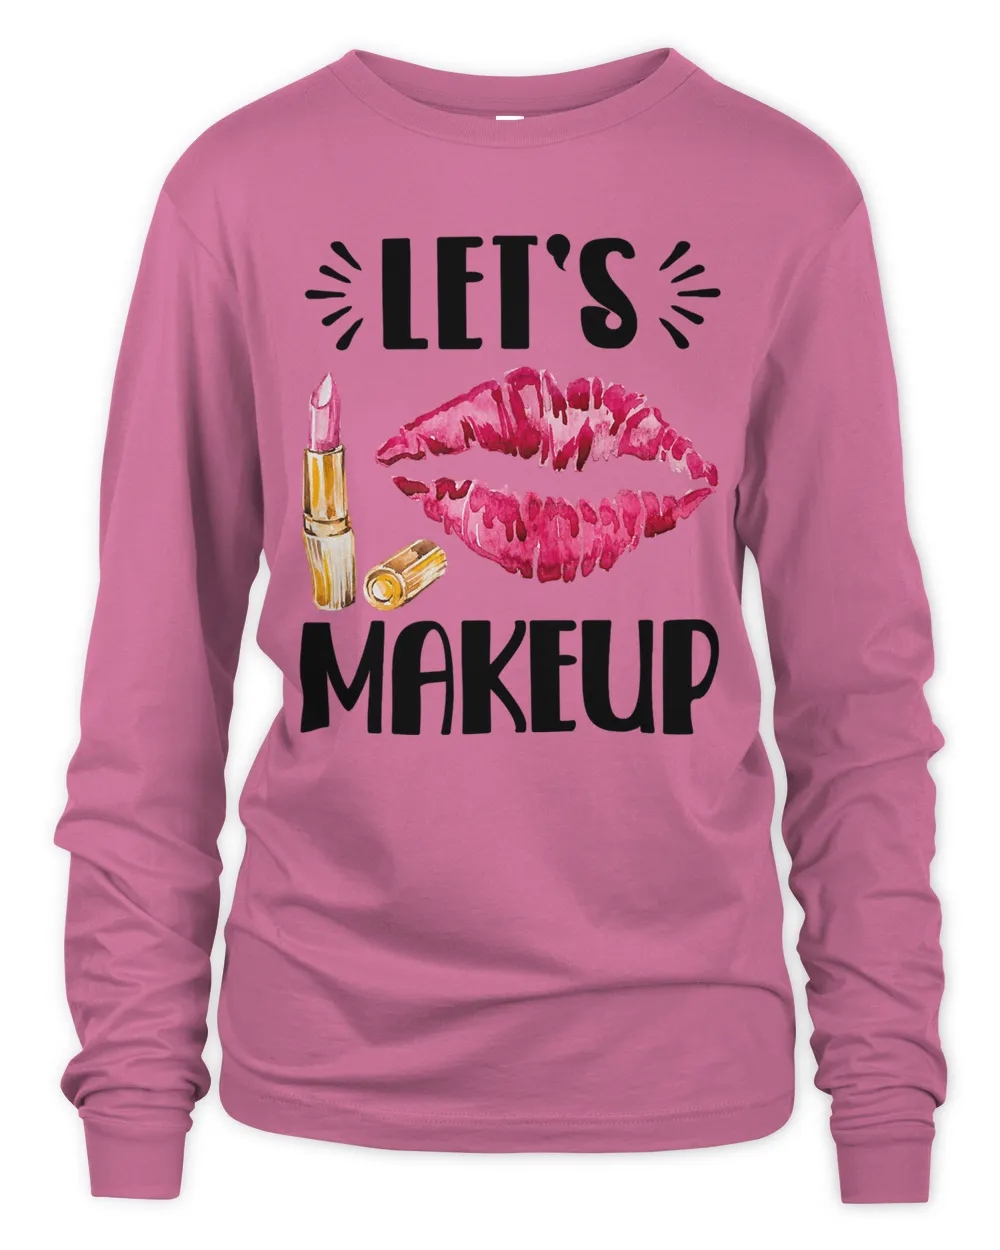 Let's makeup, beautician, cosmetics, Makeup artist